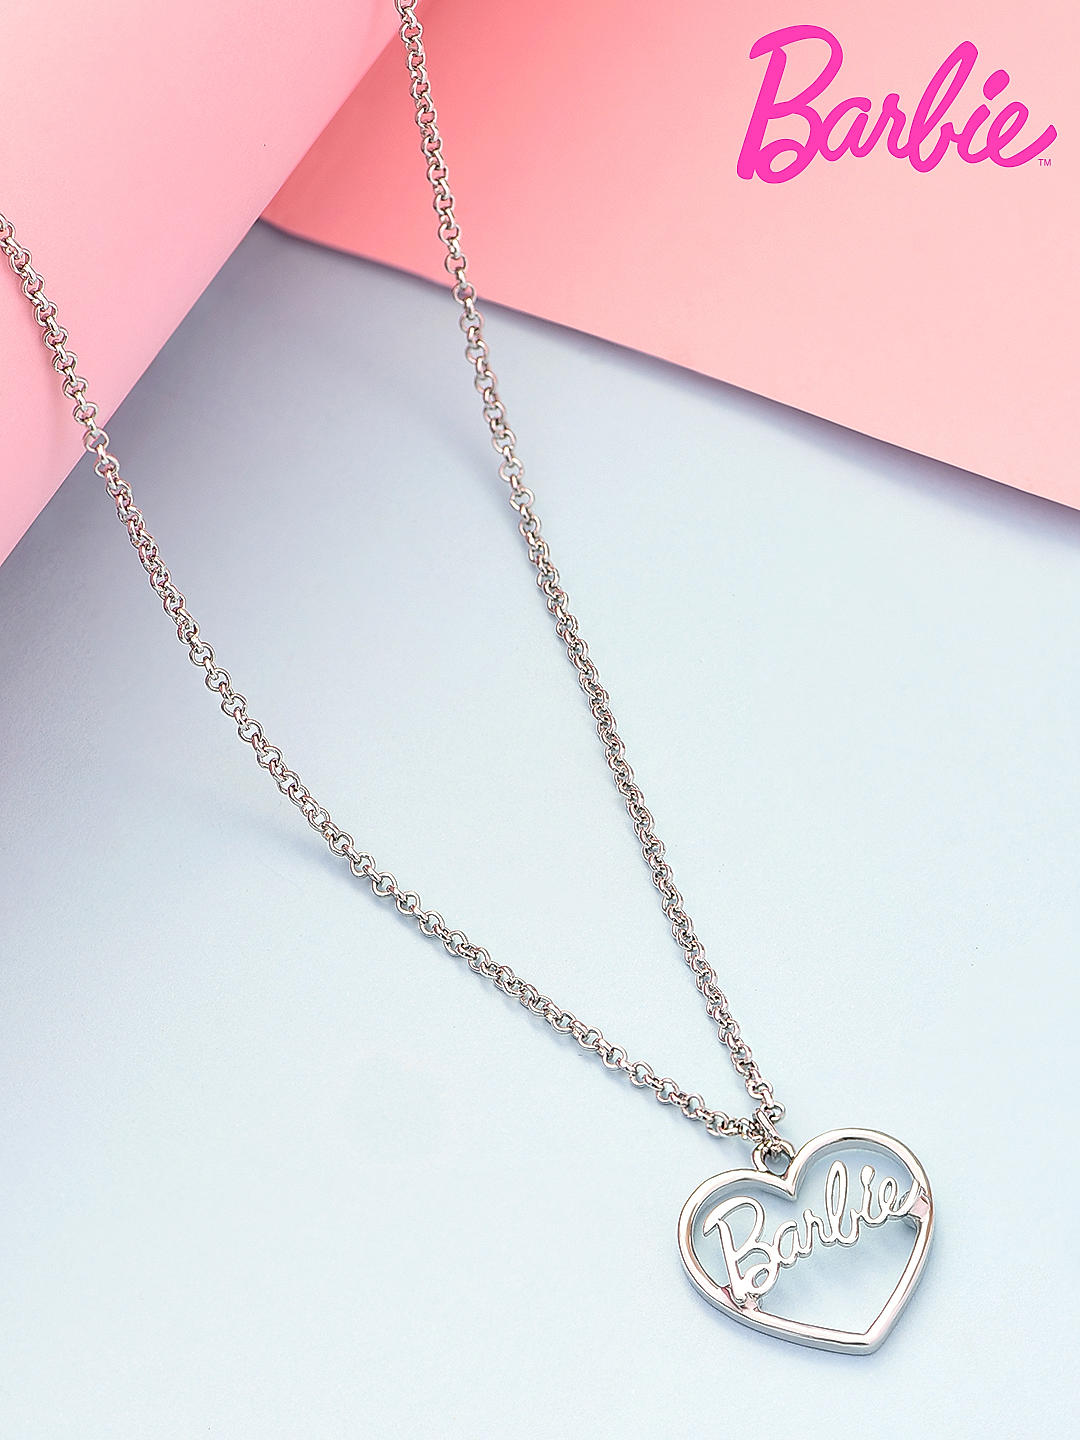 Swan Love Necklace 925 Silver – SUMARA